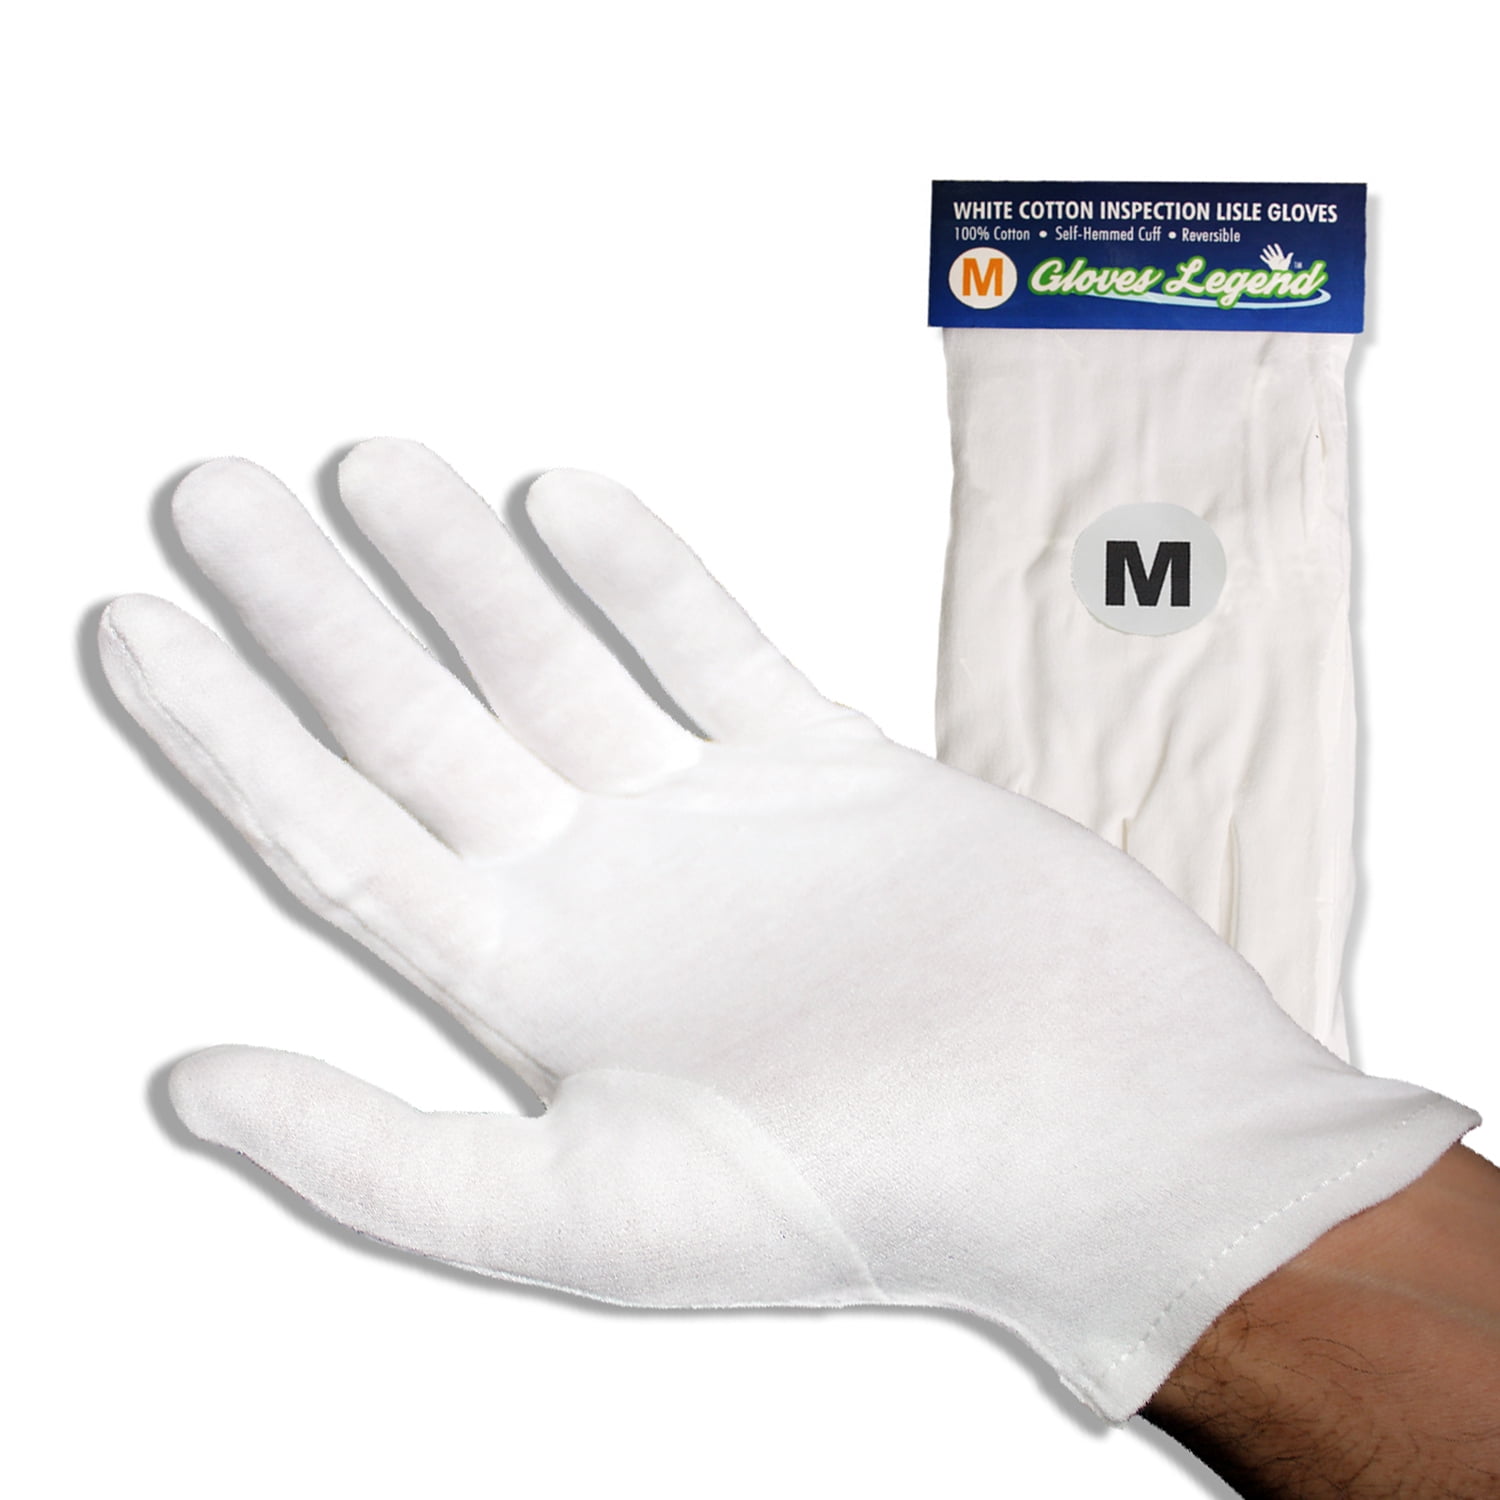 tilpasningsevne falskhed Lee 12 Pairs - Gloves Legend 100% Cotton Jewelry Silver White Inspection Gloves  - Large - Walmart.com